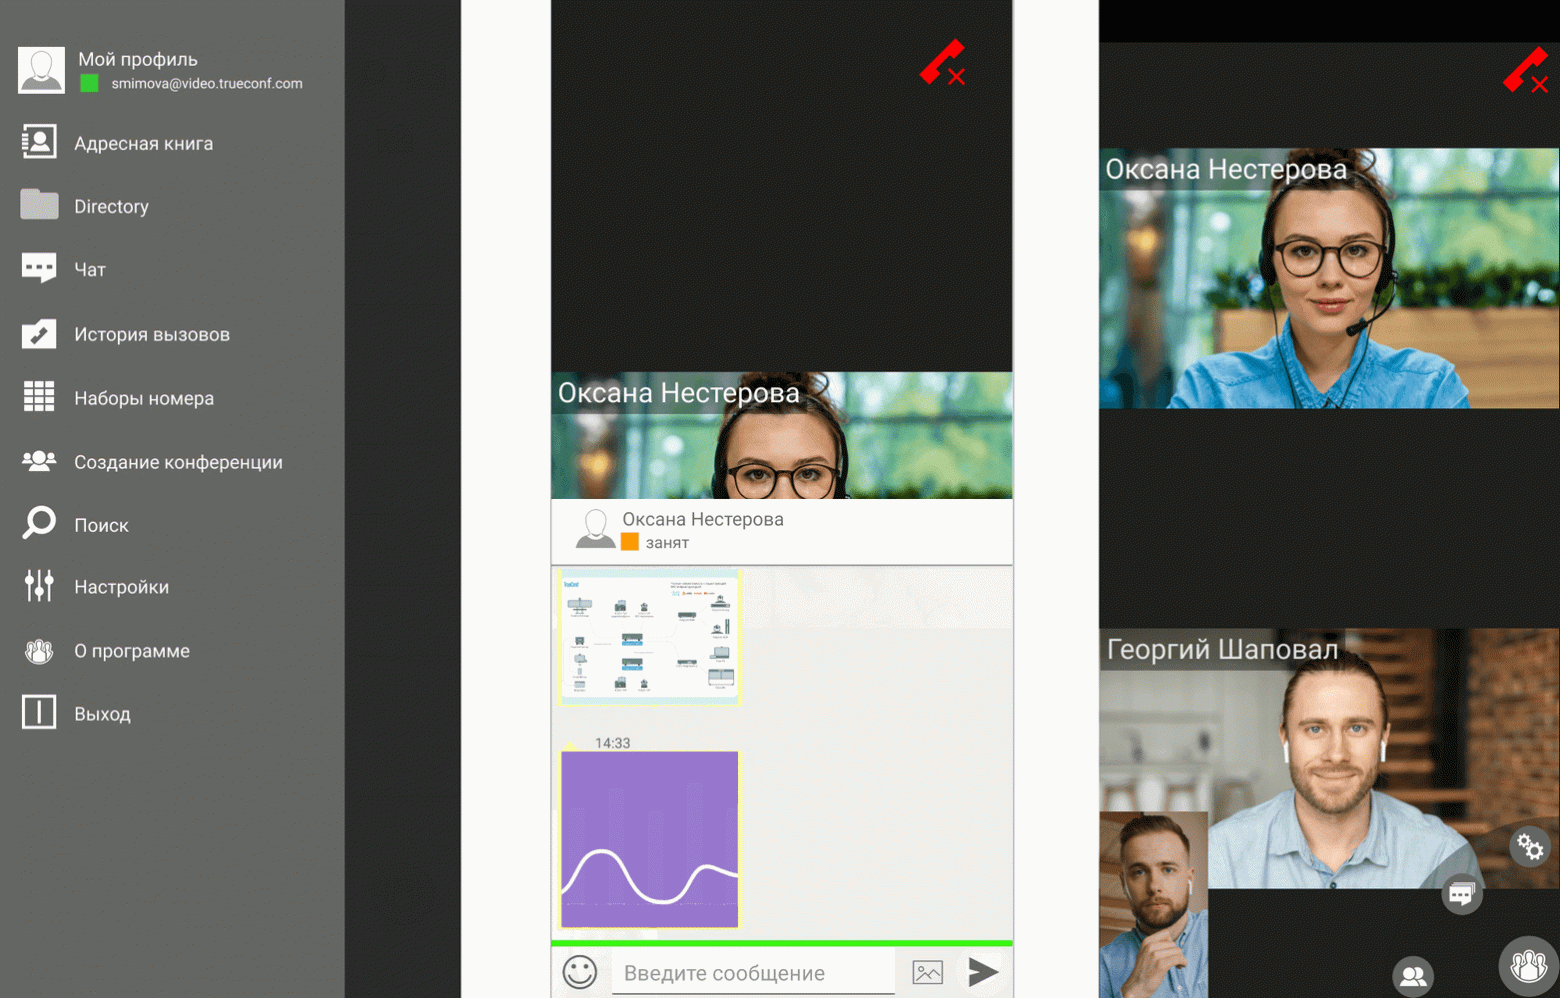 Примеры интерфейса в приложении TrueConf 1.3 для Android